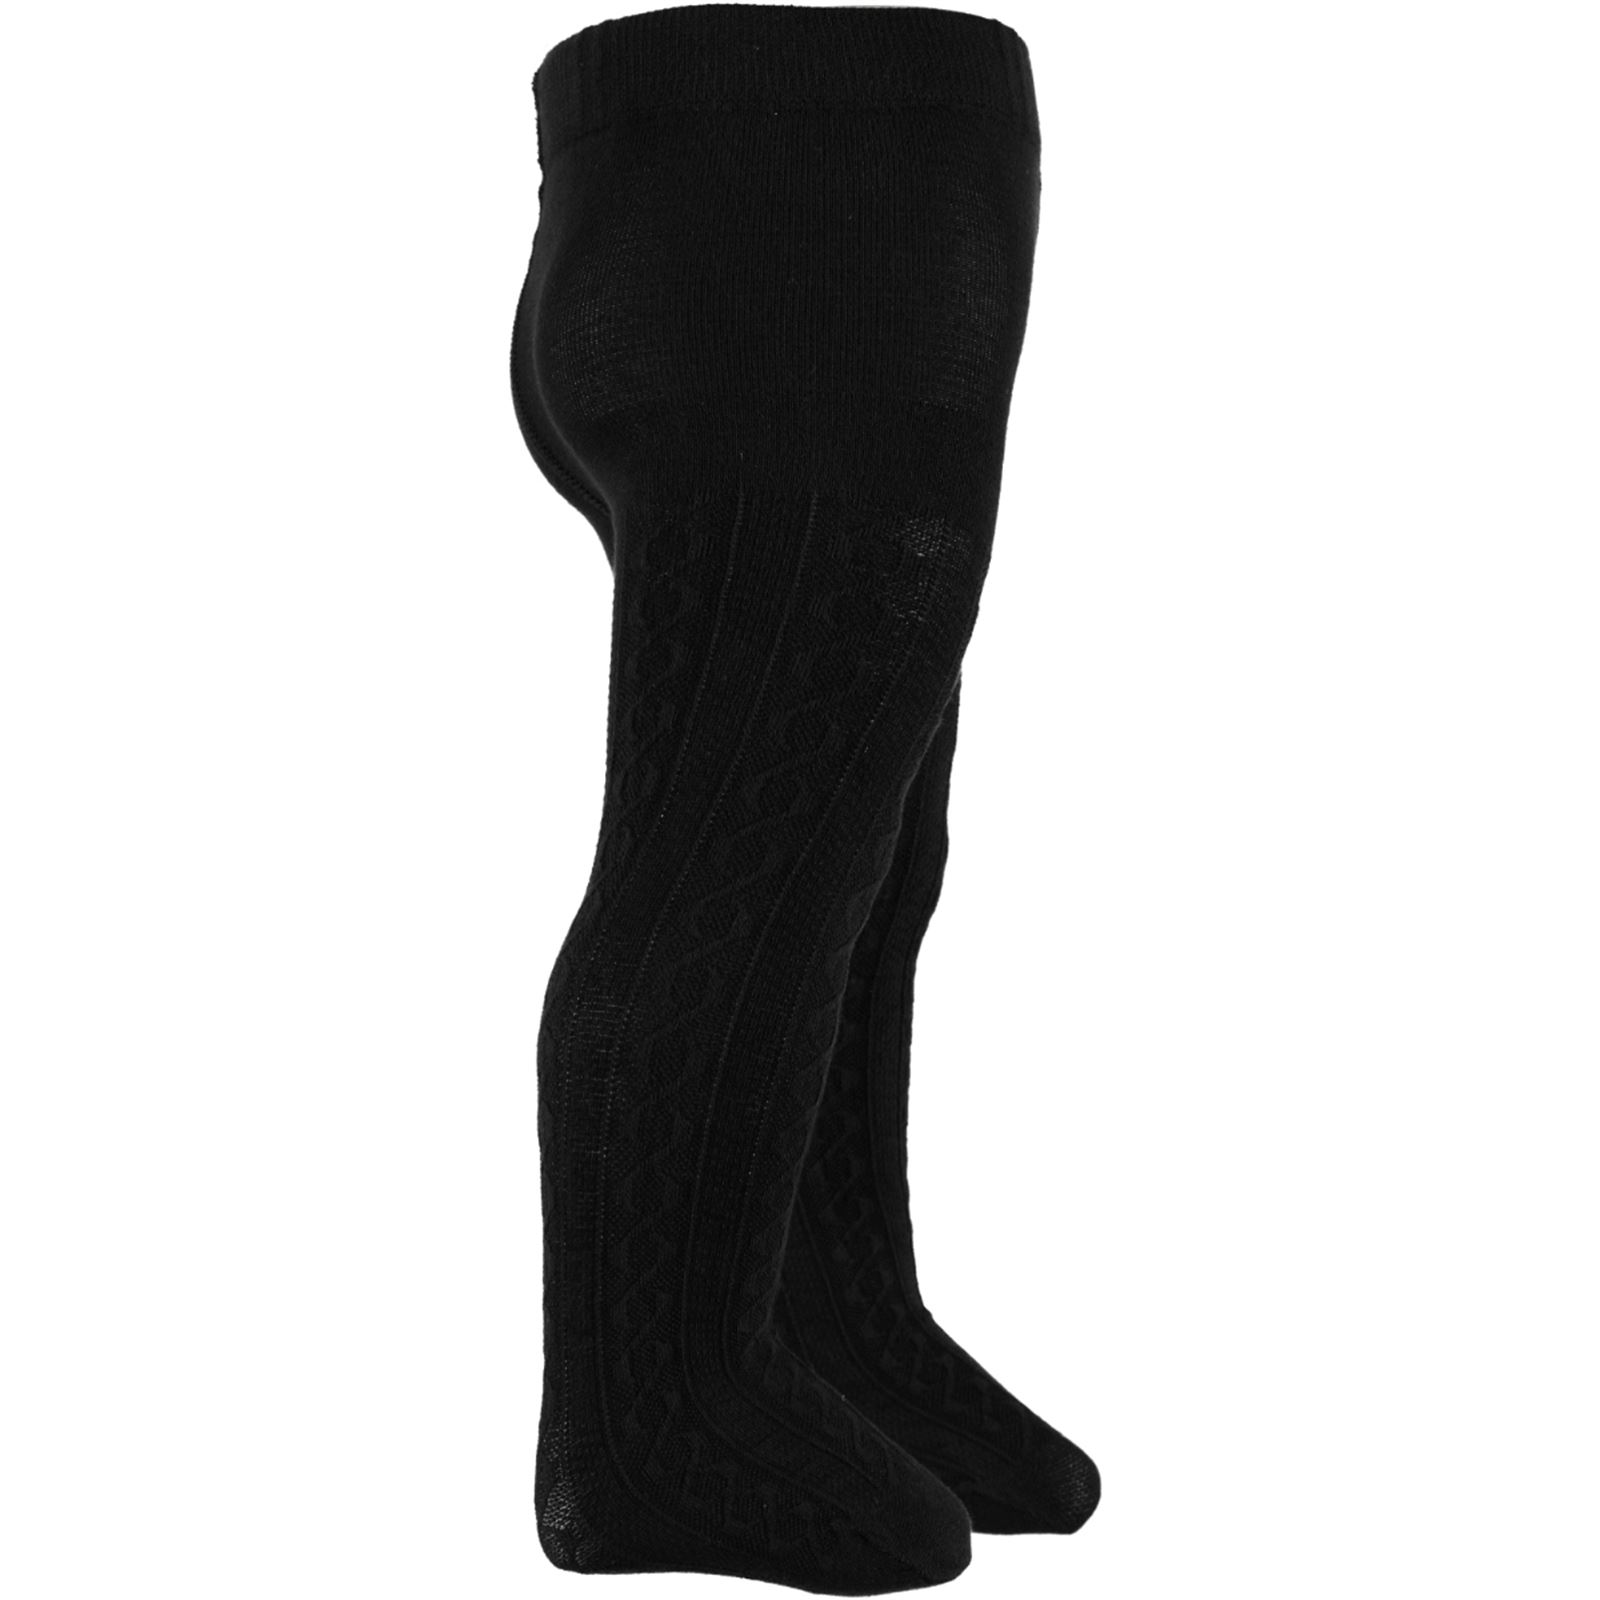 Bella Calze Triko Külotlu Çorap 0-24 Ay Siyah